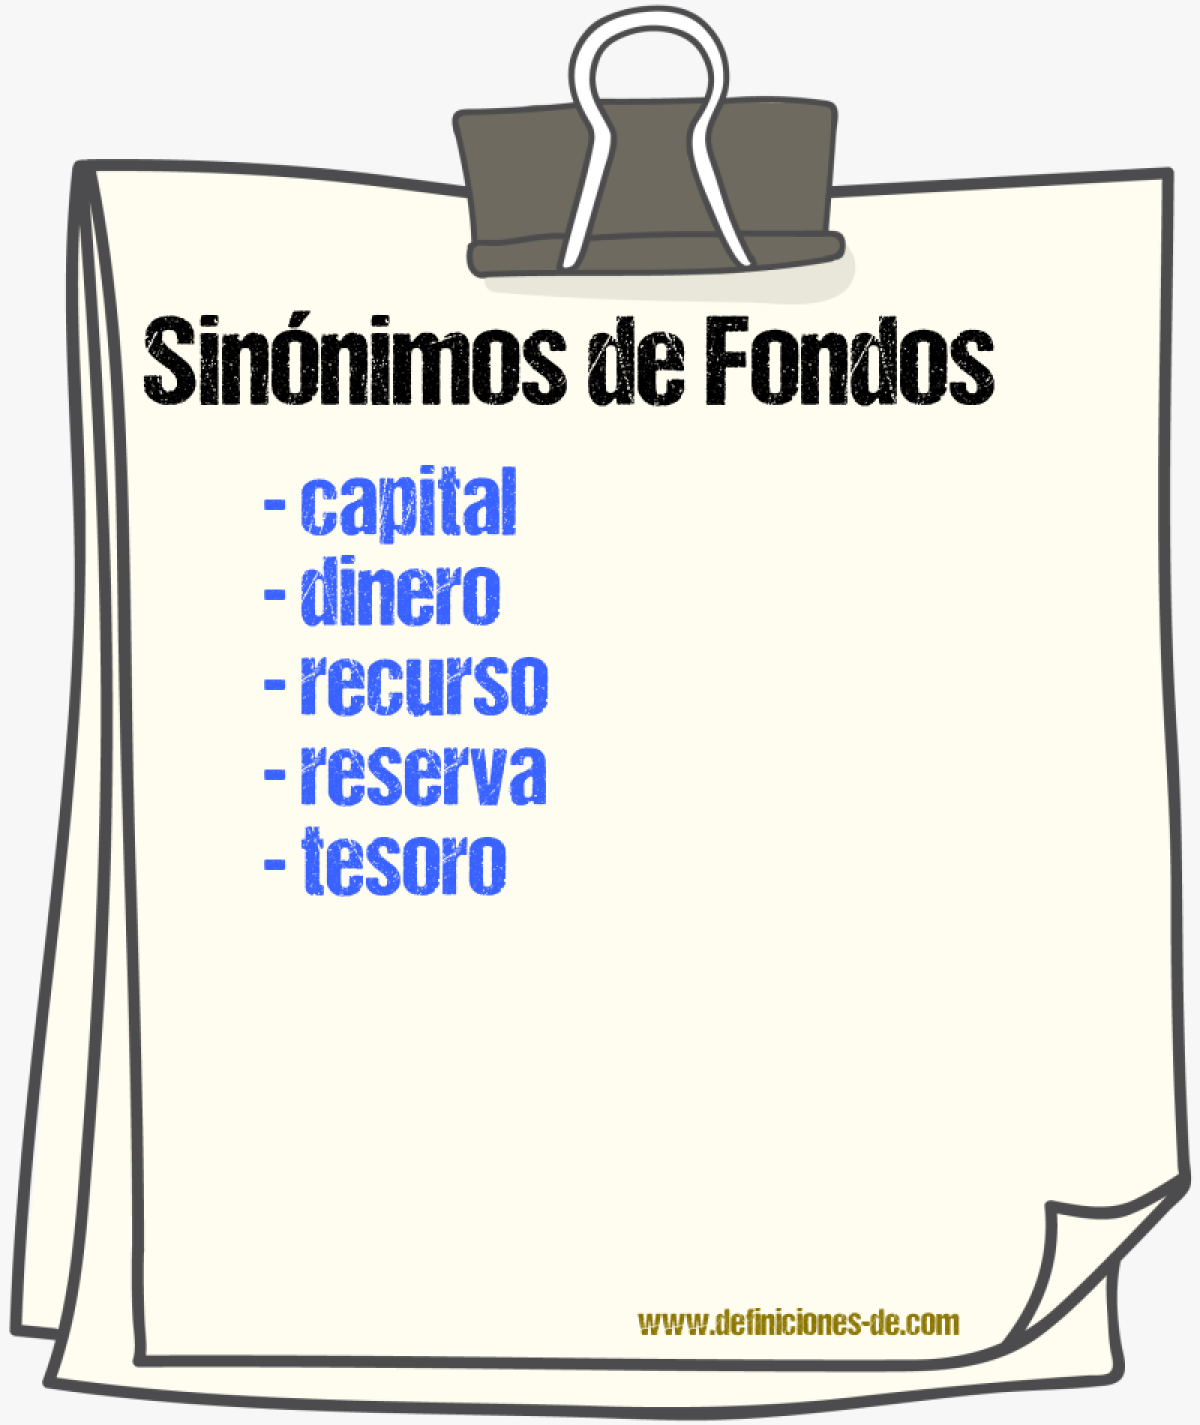 Sinónimos de fondos